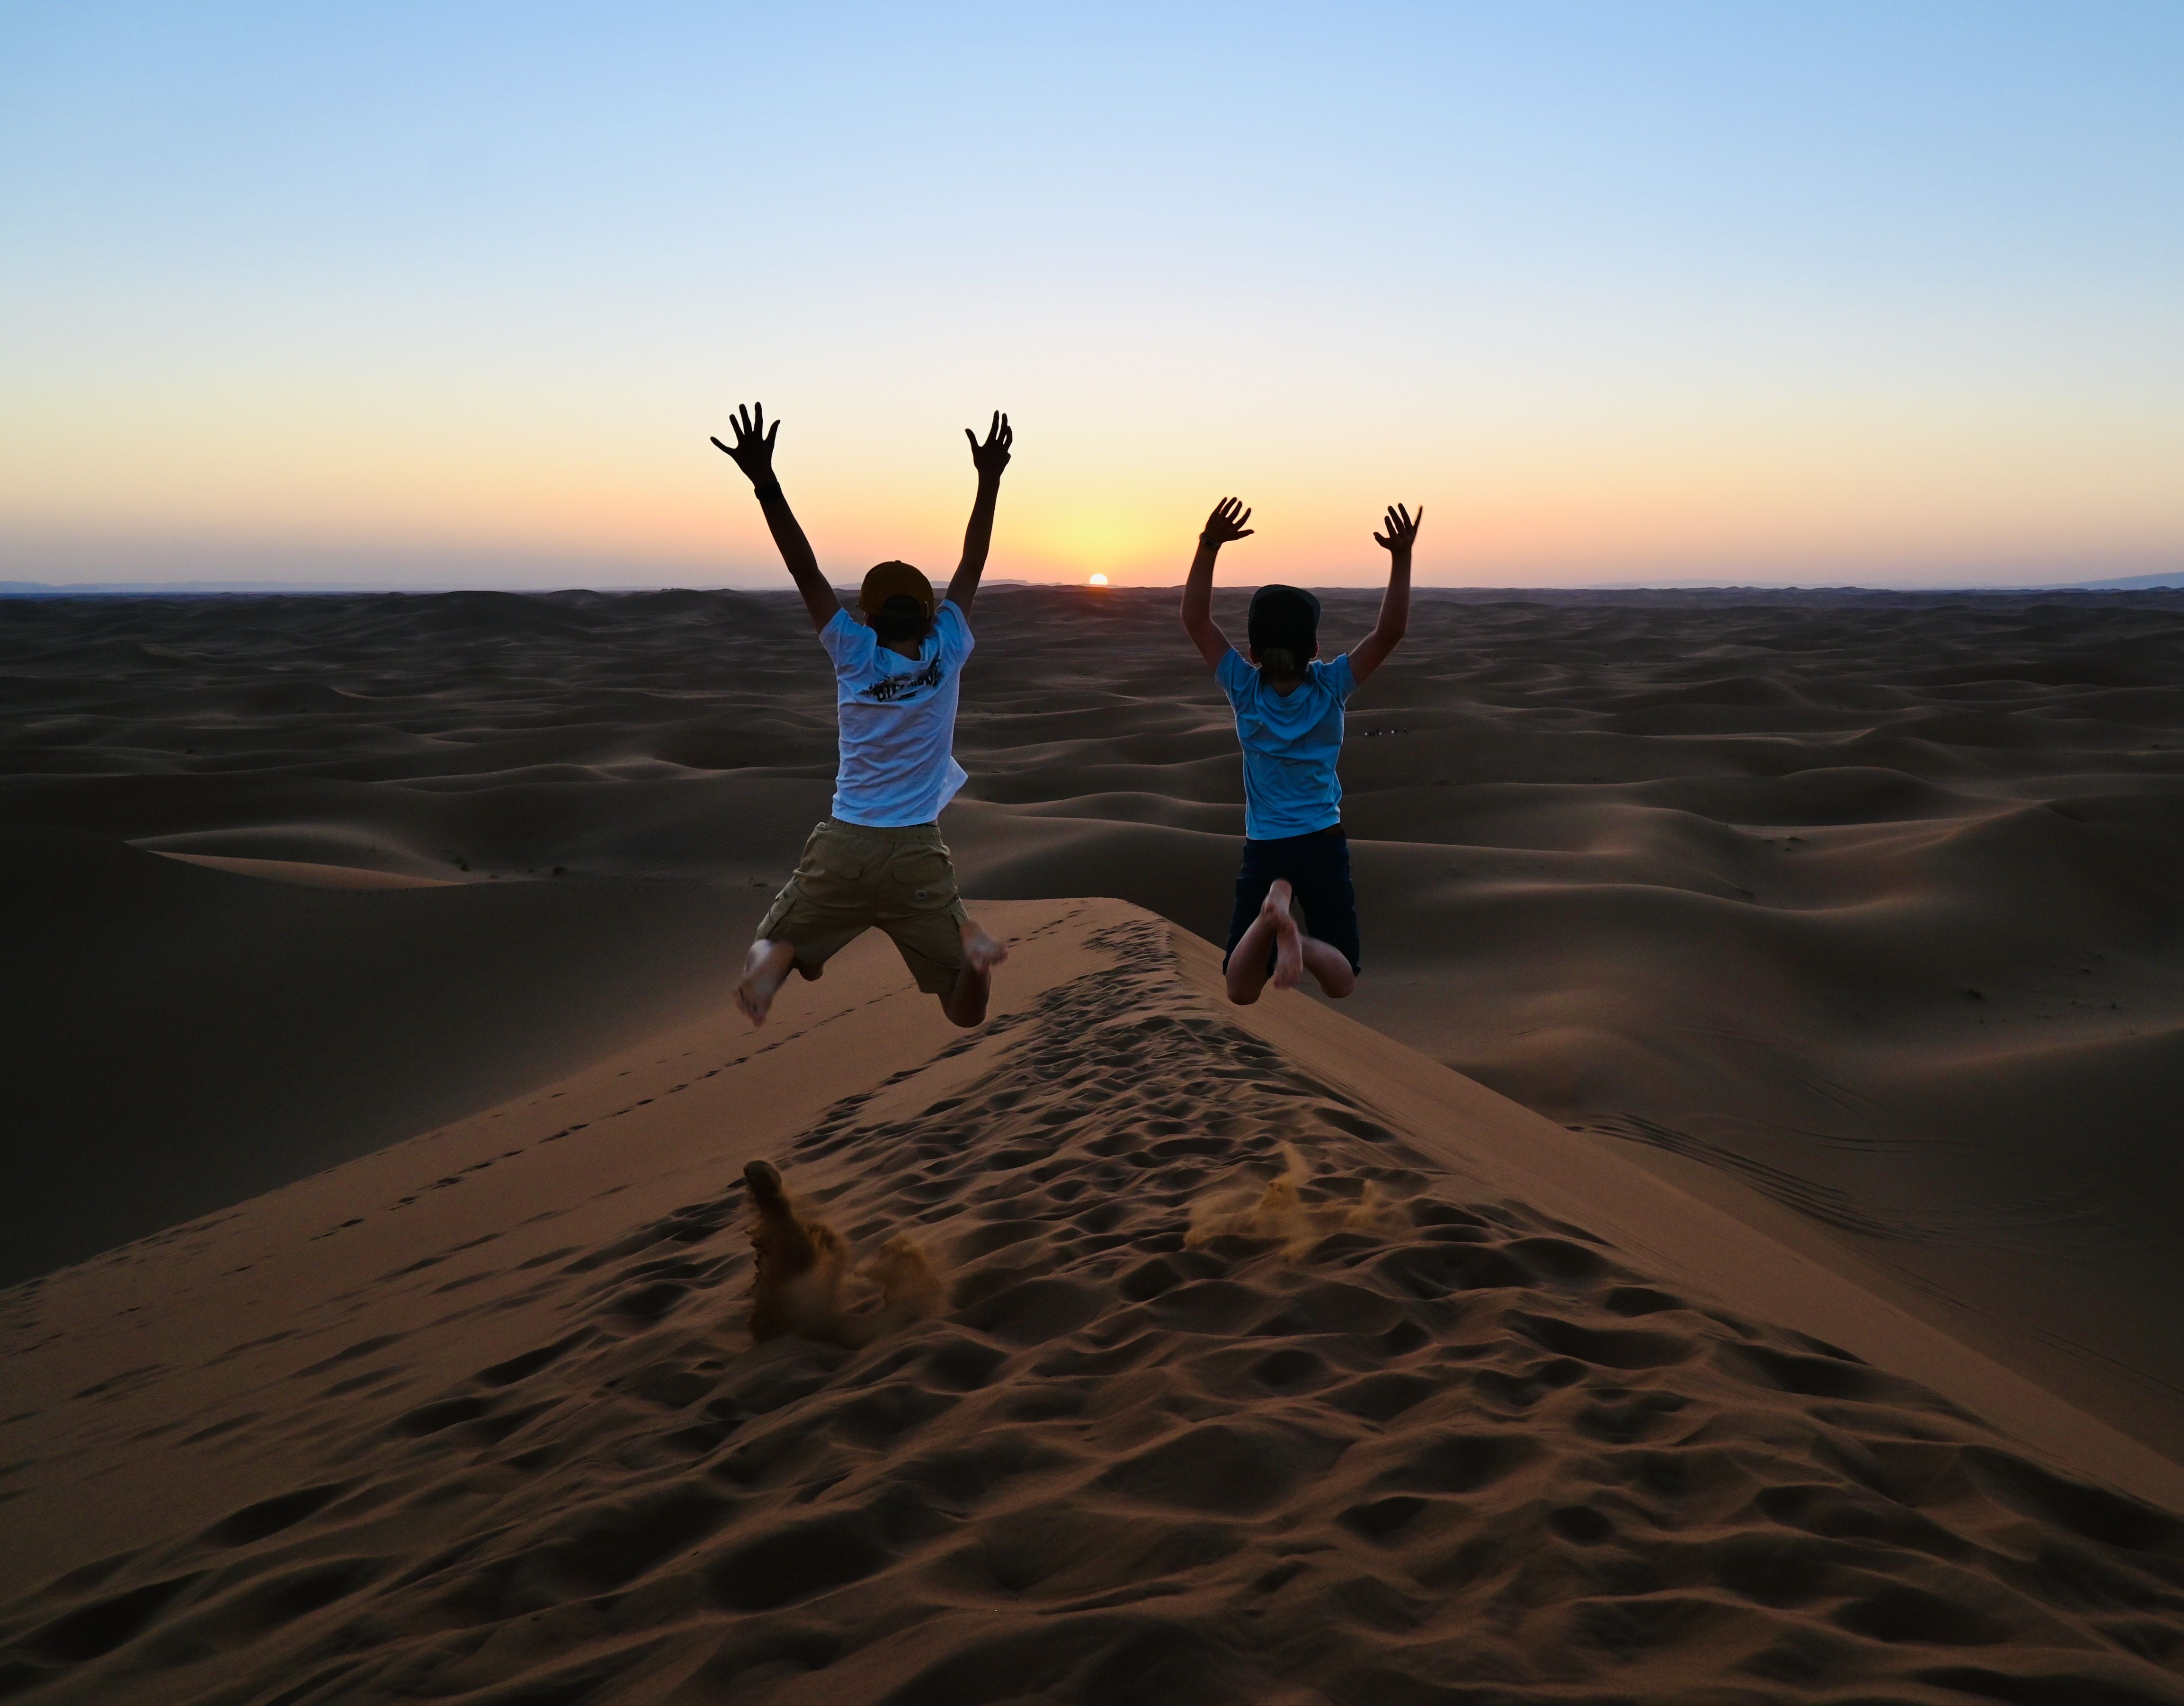 Marokko for family individuell - Erfahrungen mit Kindern in Marokko - Kinder bei Sonnenuntergang in Wüste